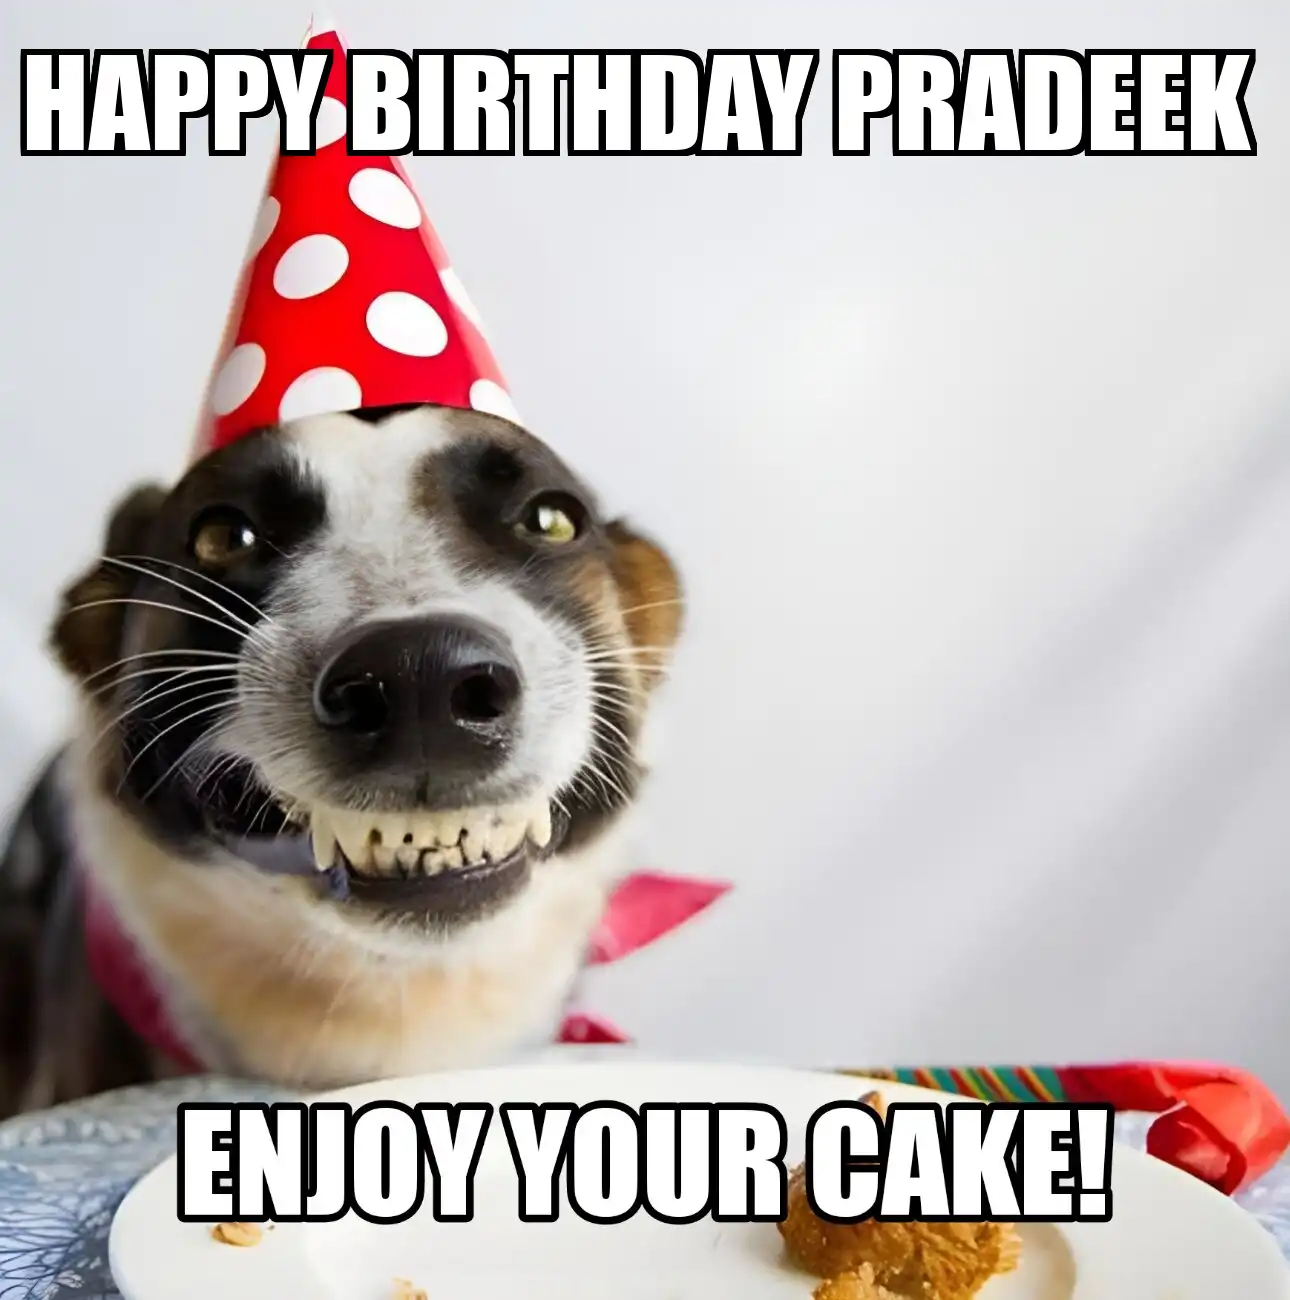 Happy Birthday Pradeek Enjoy Your Cake Dog Meme